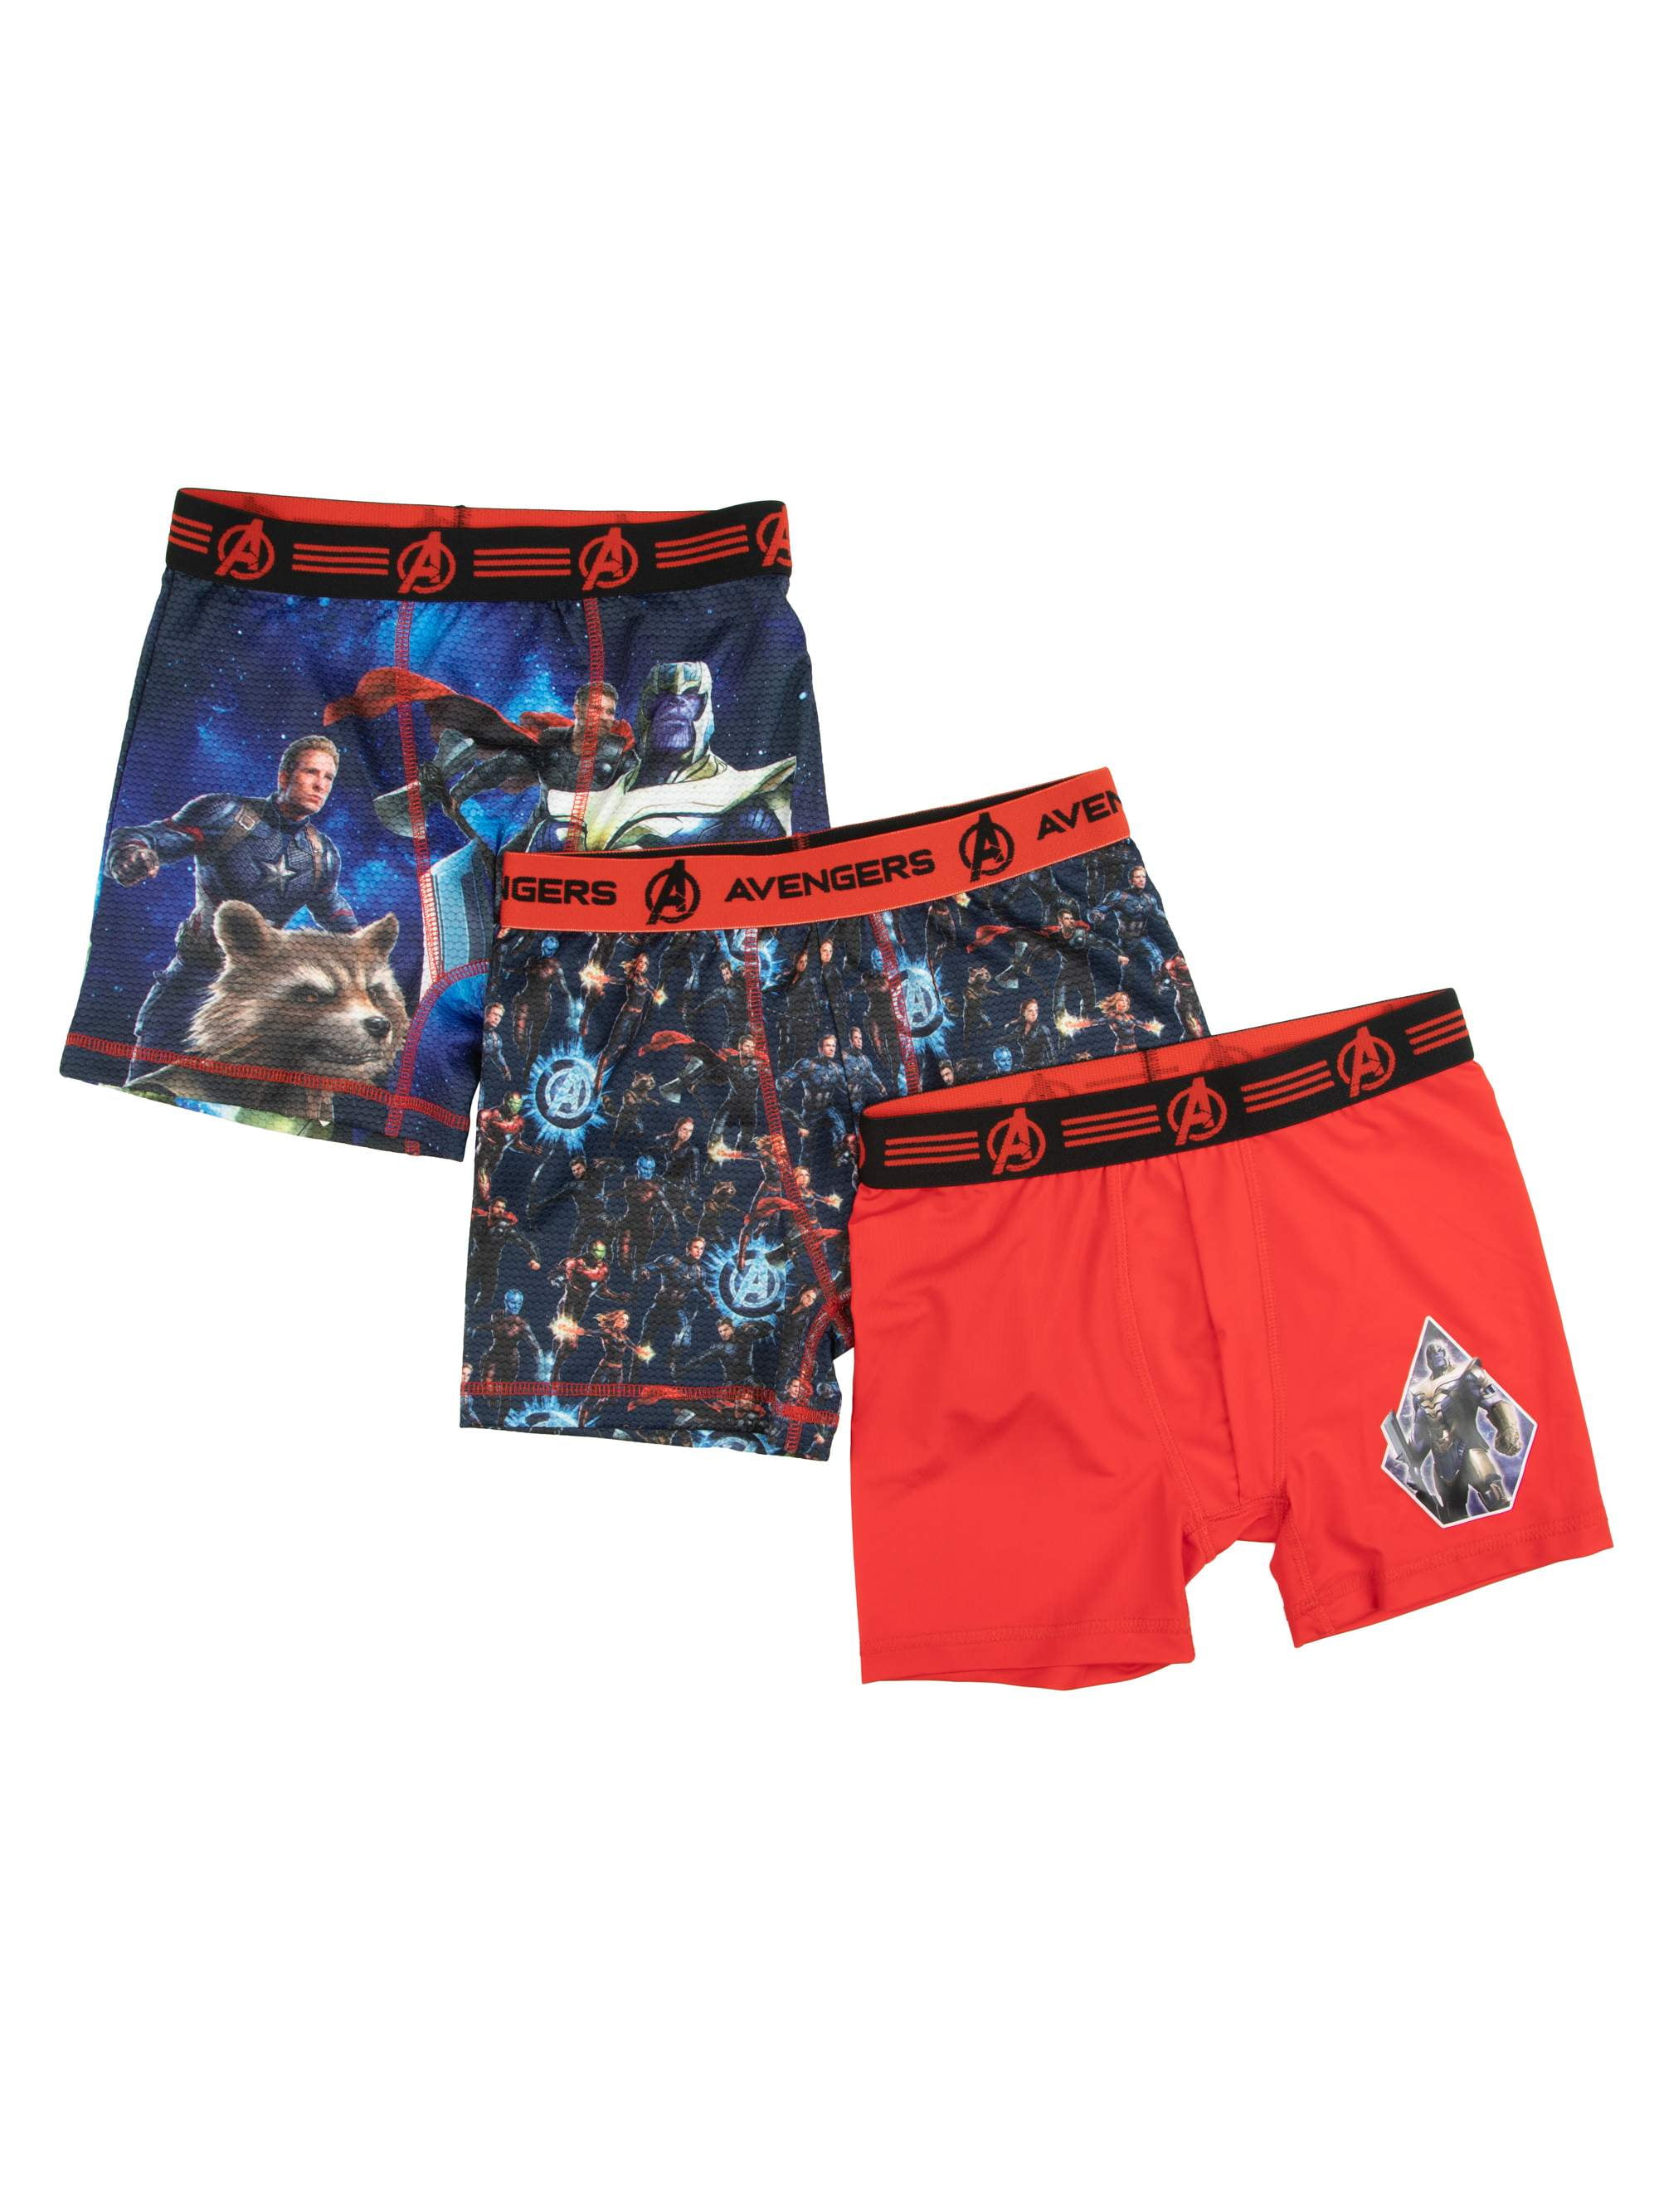 PAW Patrol Boys Underwear, 5 Pack Boxer Briefs Sizes 4-6 - Walmart.com